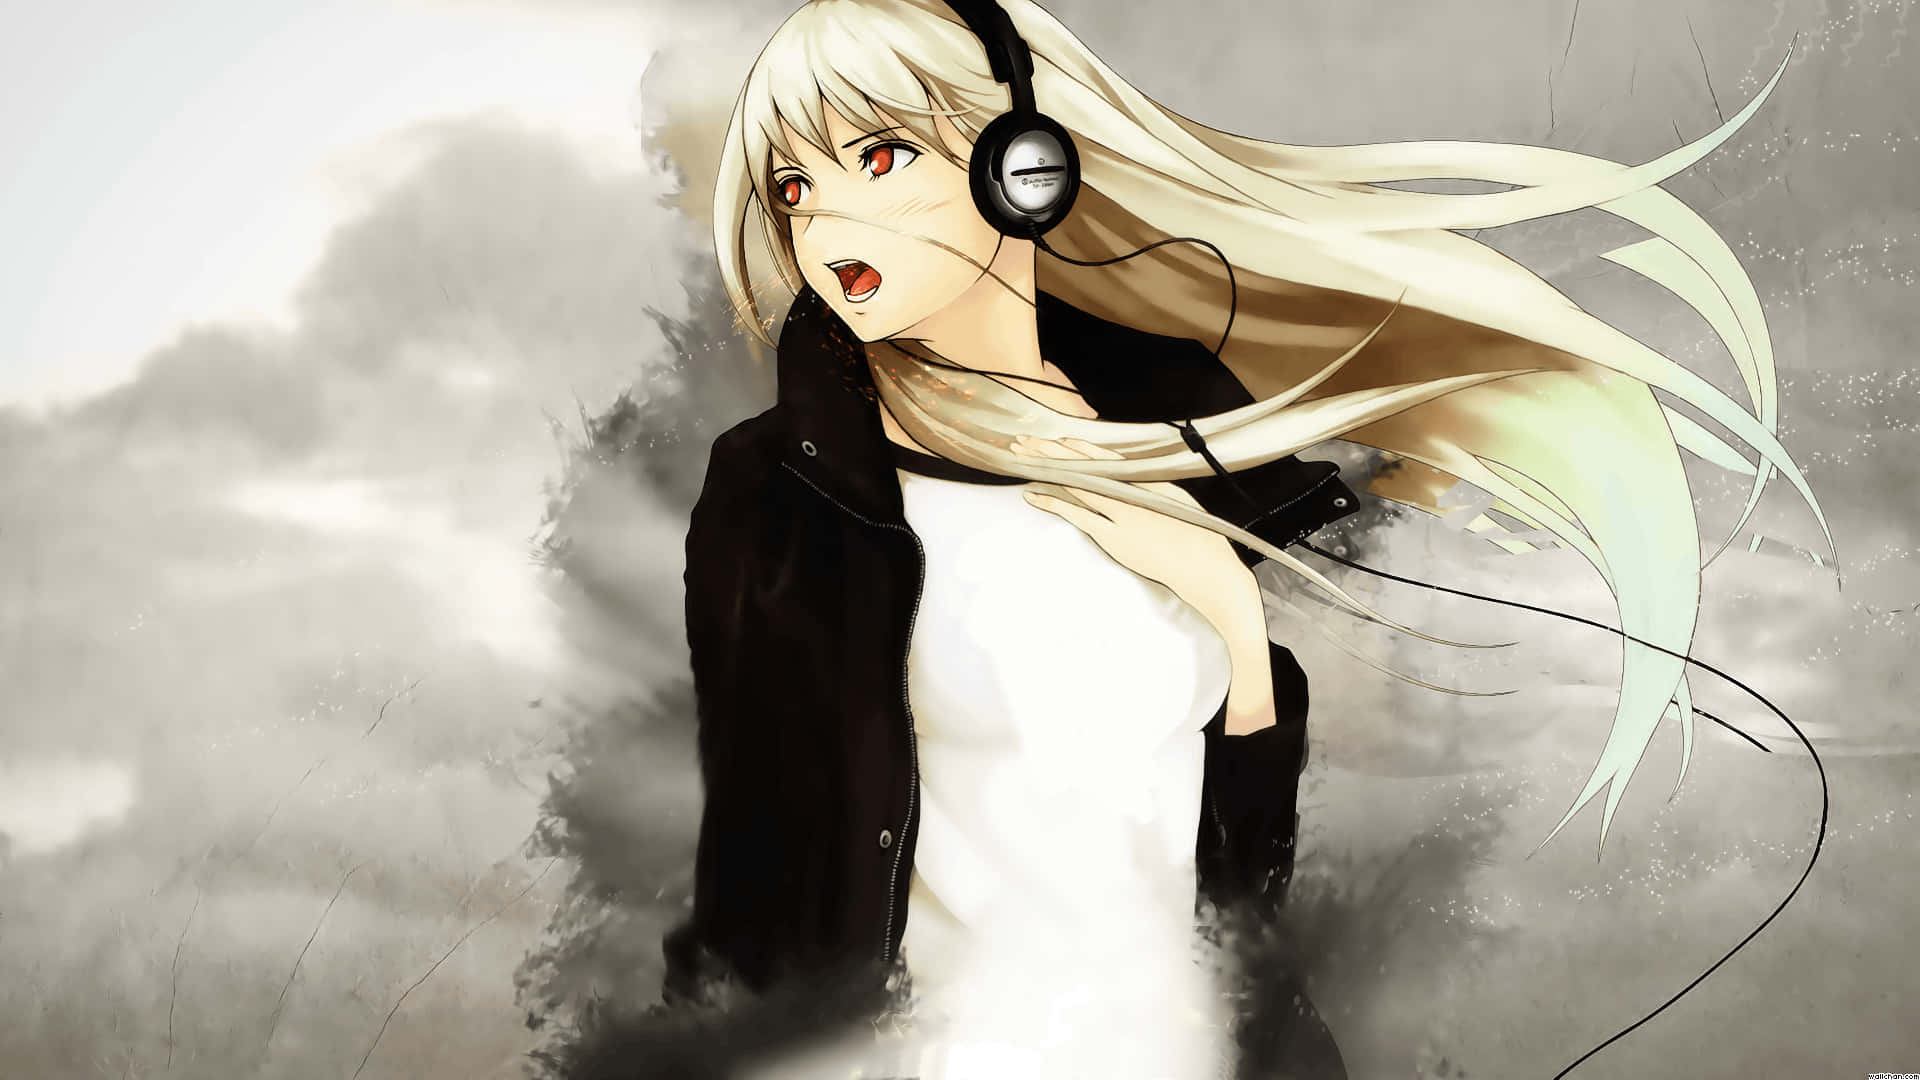 Good Anime Girl Headphones For Songs